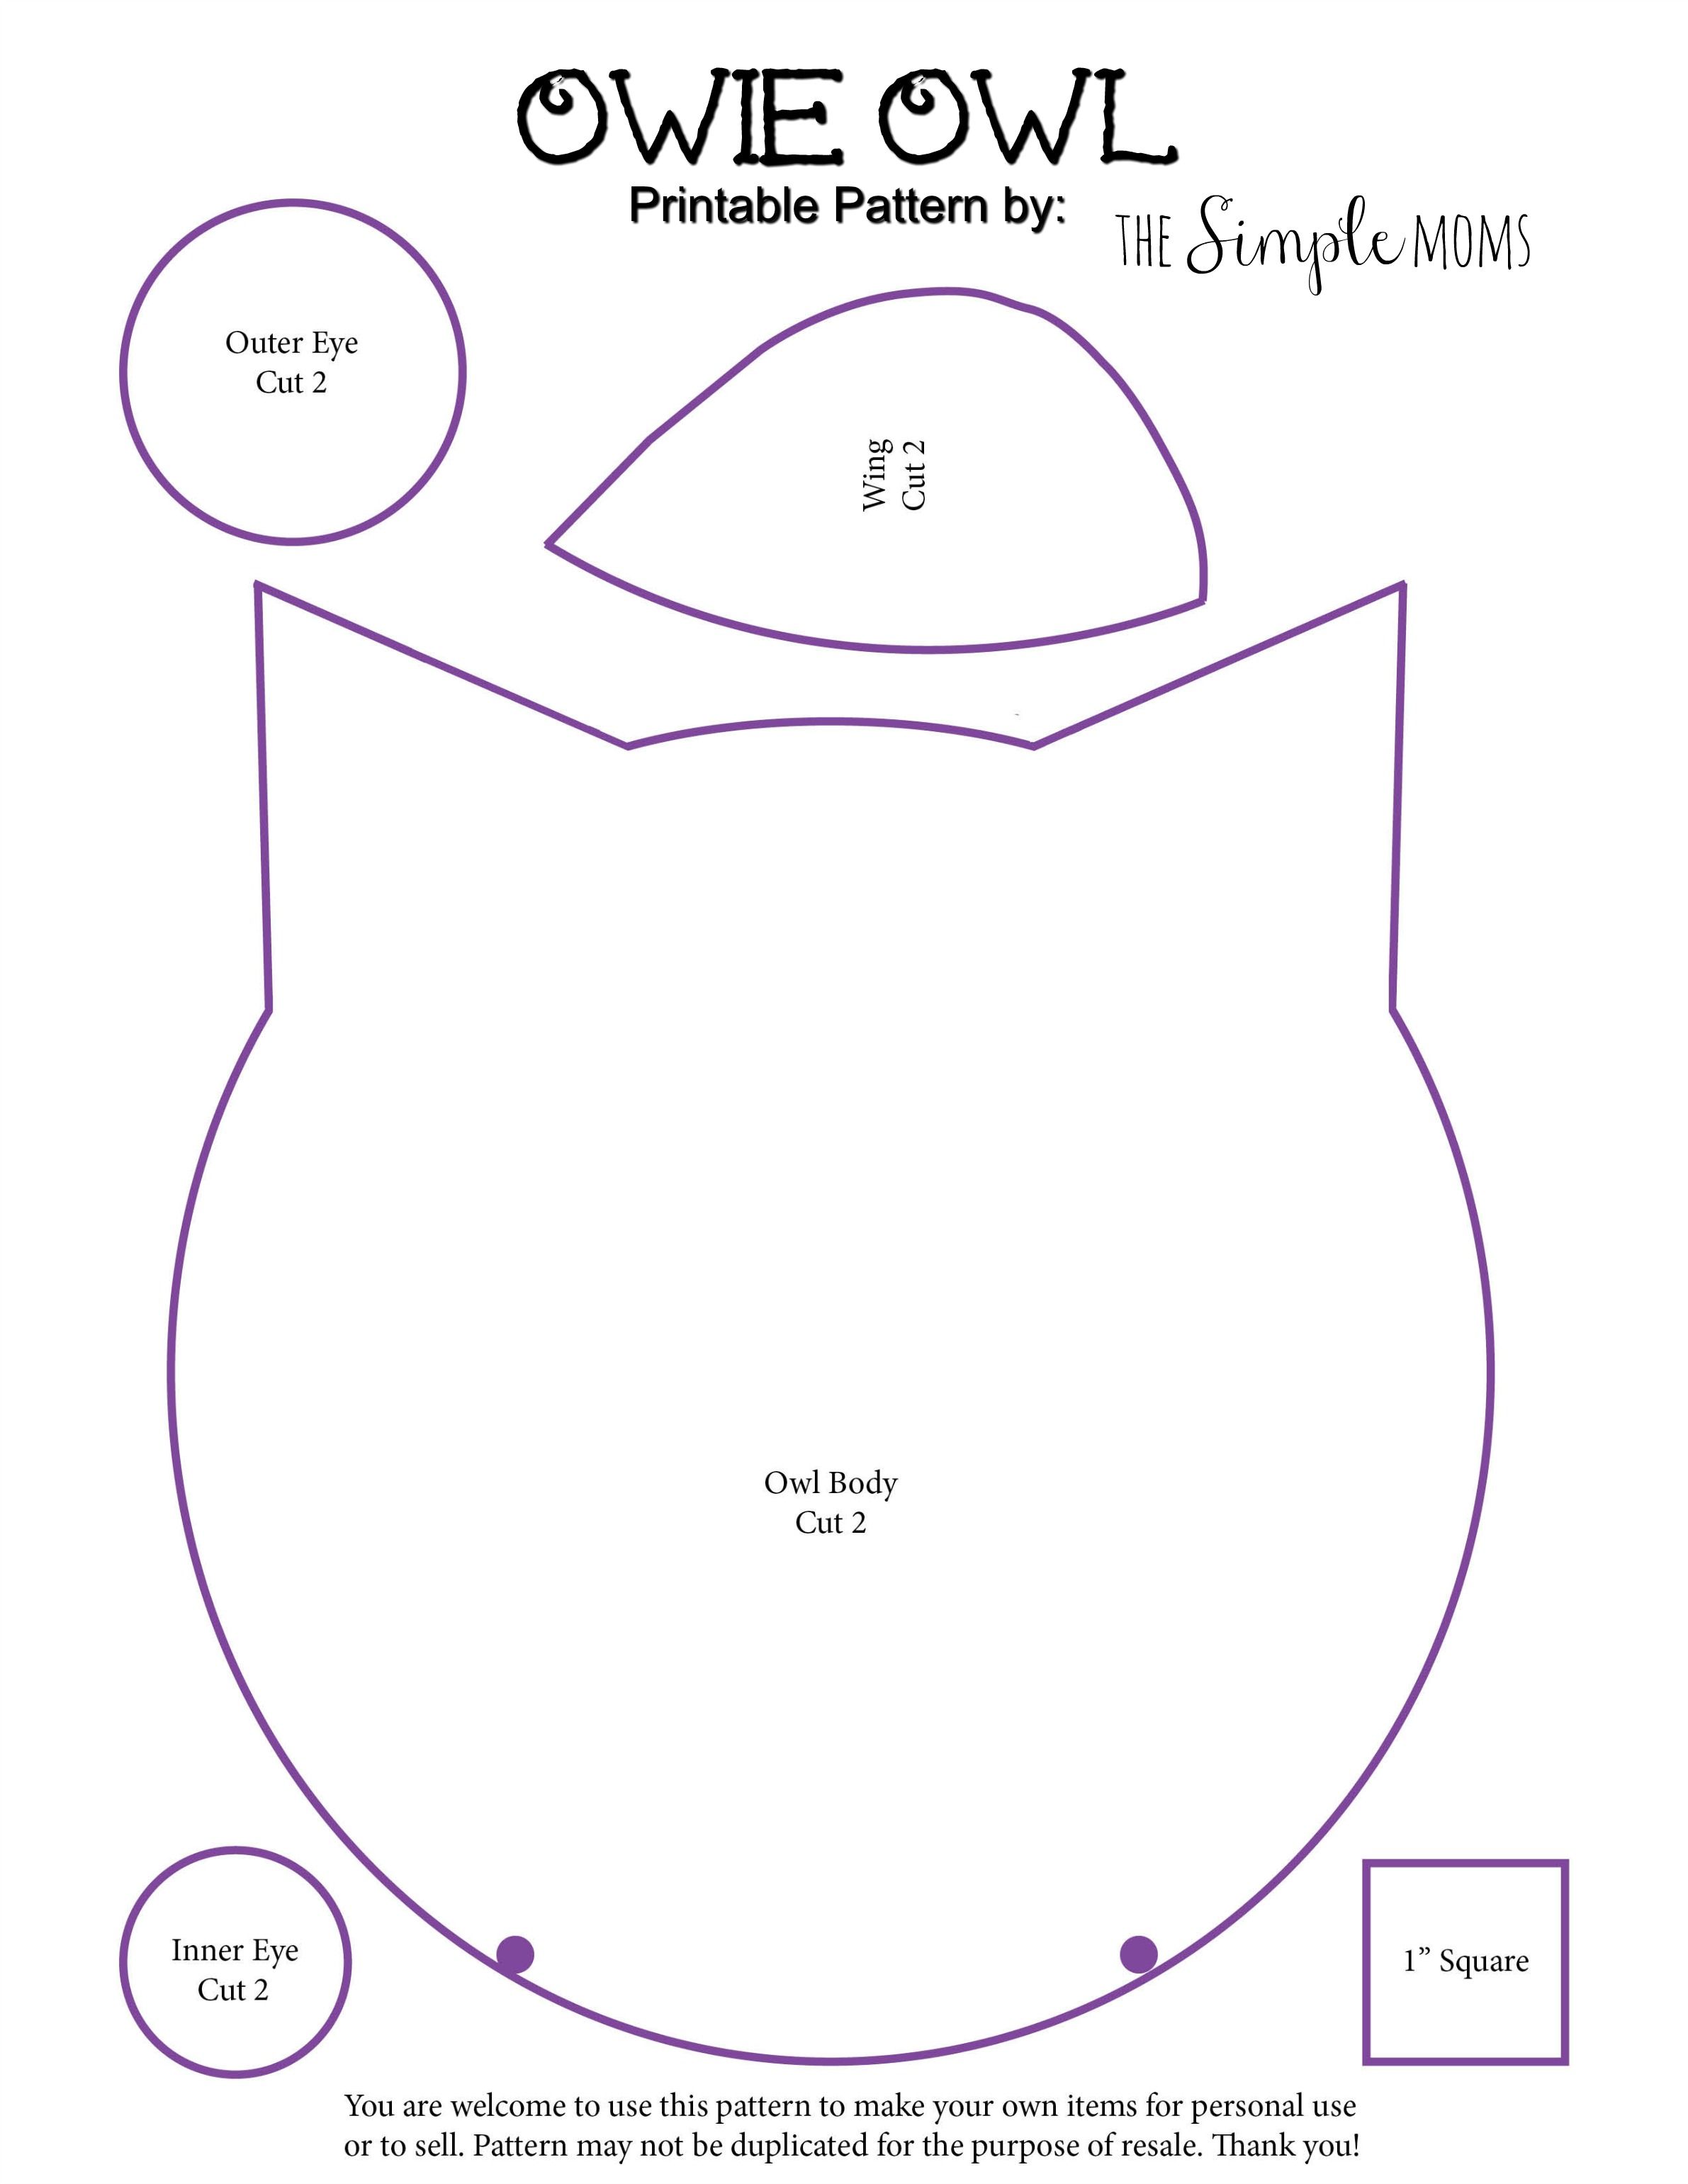 diy owie owl rice pack + printable pattern :: a simple sewing tutorial